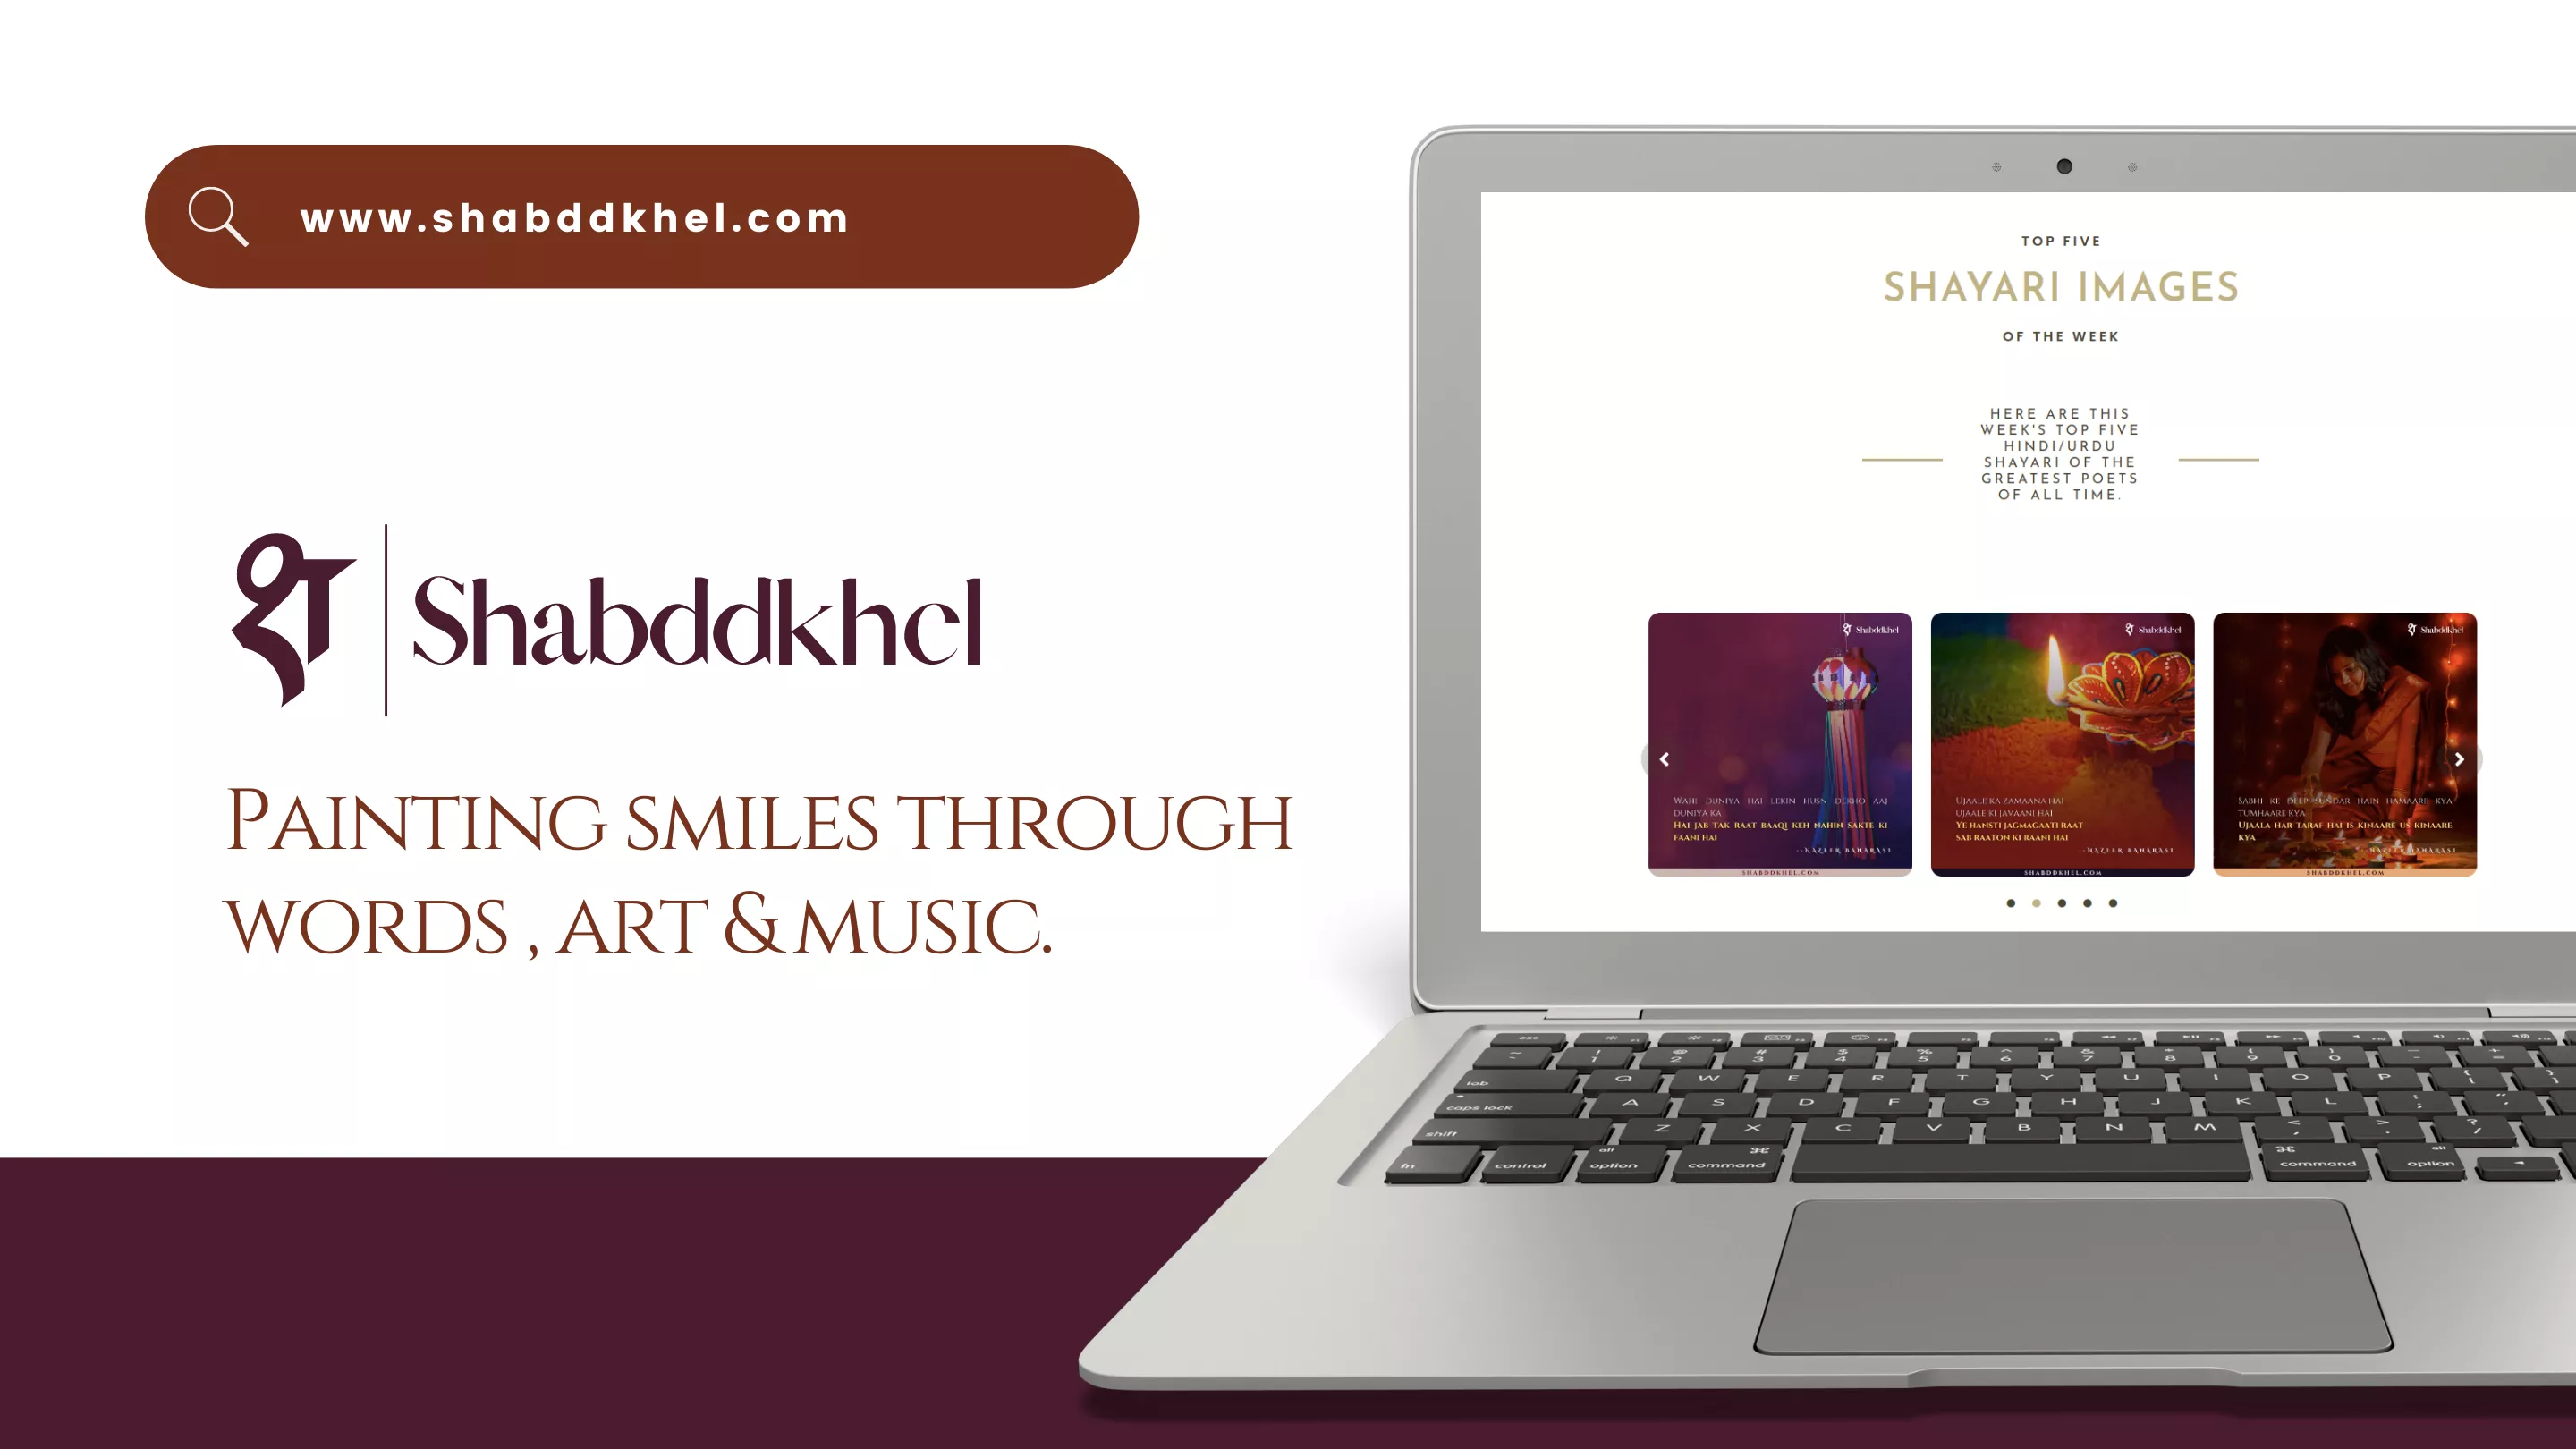 BrandKob Project -Shayari Images - Shabddkhel